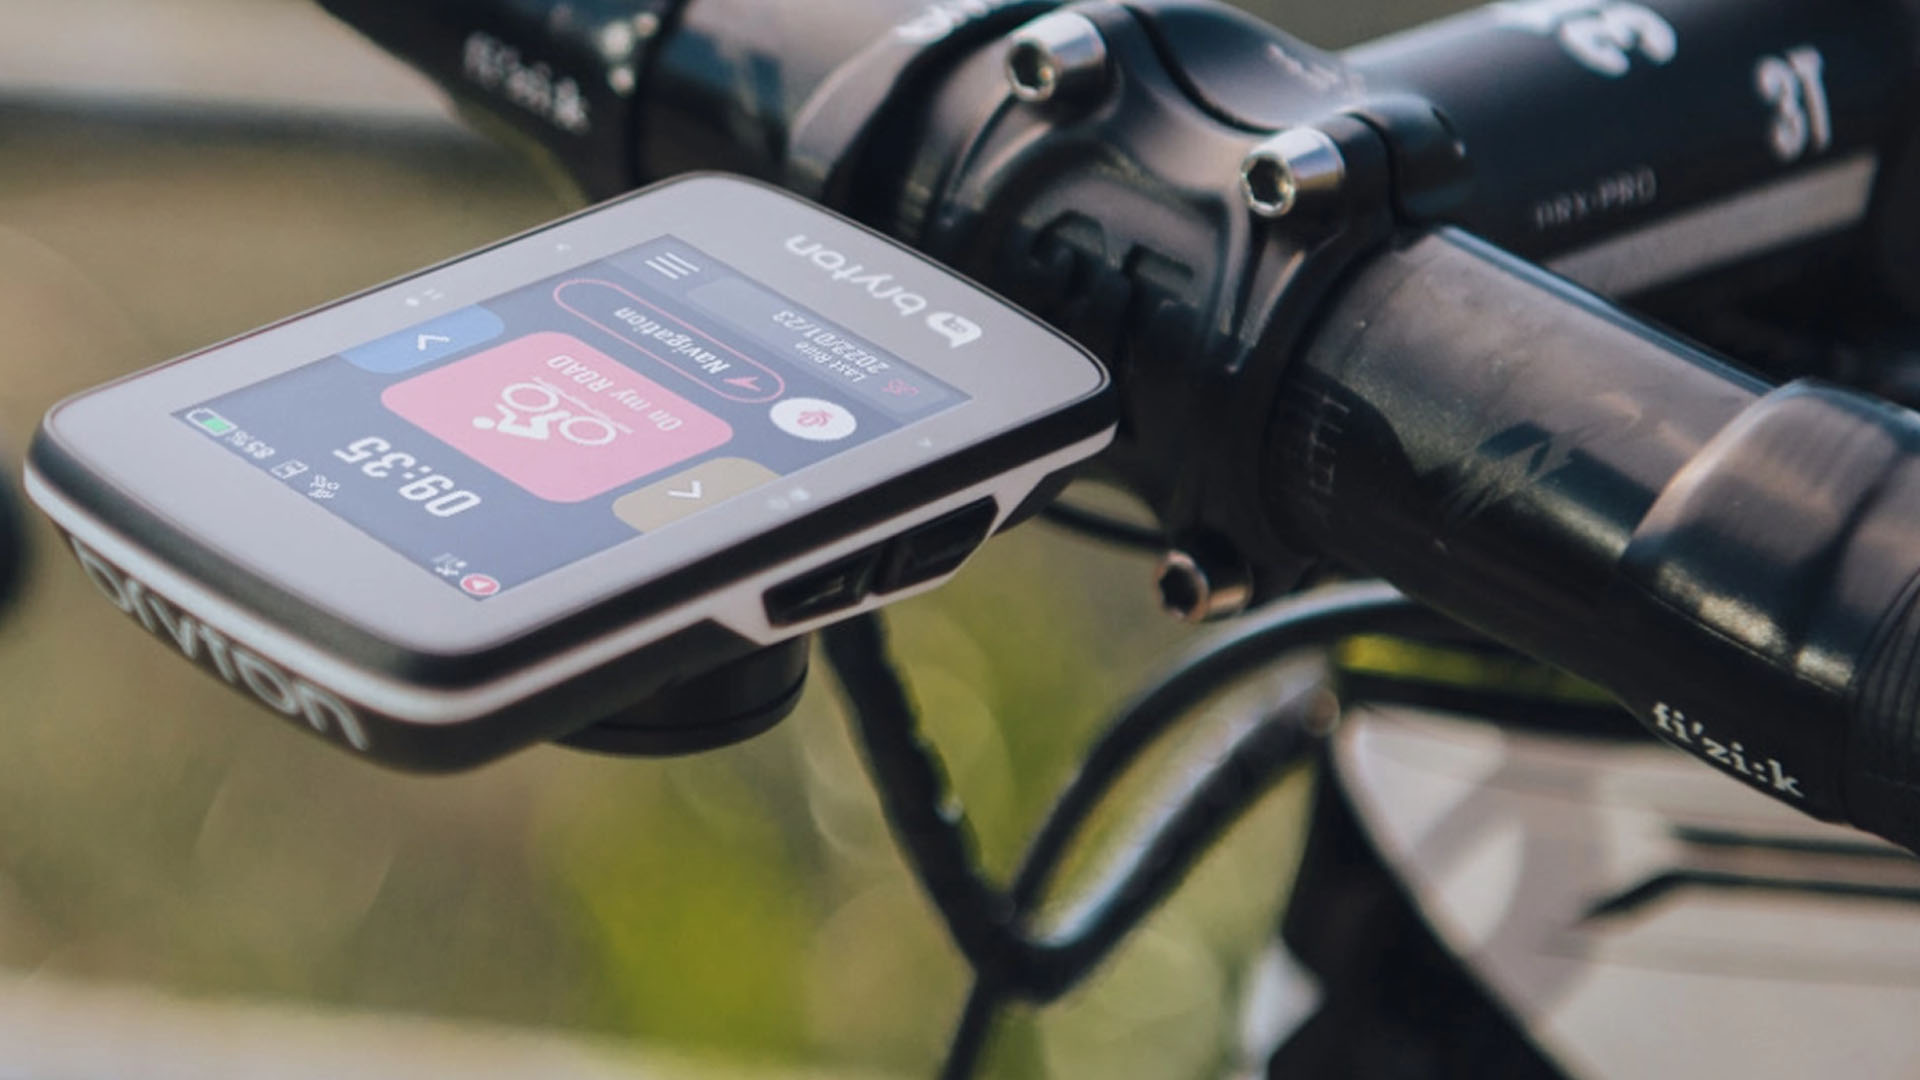 Comment trouver le bon compteur GPS pour votre vélo ?